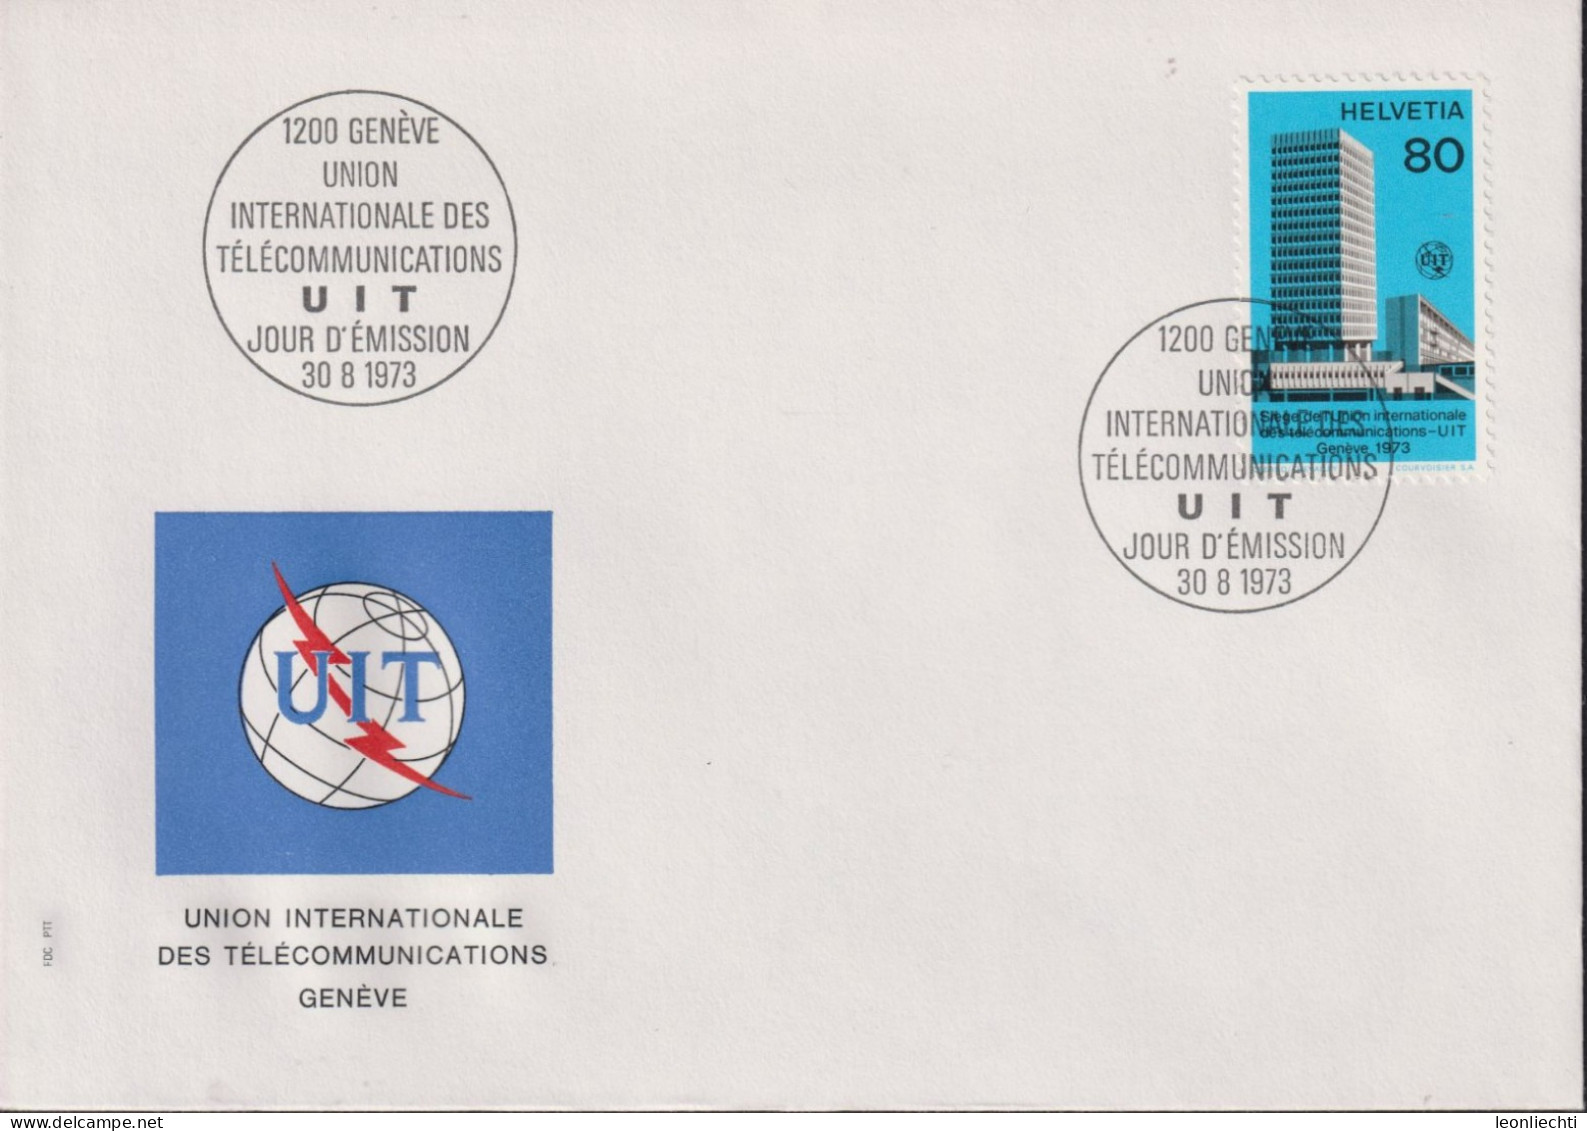 1976 Schweiz FDC, UIT, Zum:UIT 10, Mi:UIT 10,ⵙ1200 GENÈVE UIT - Dienstmarken